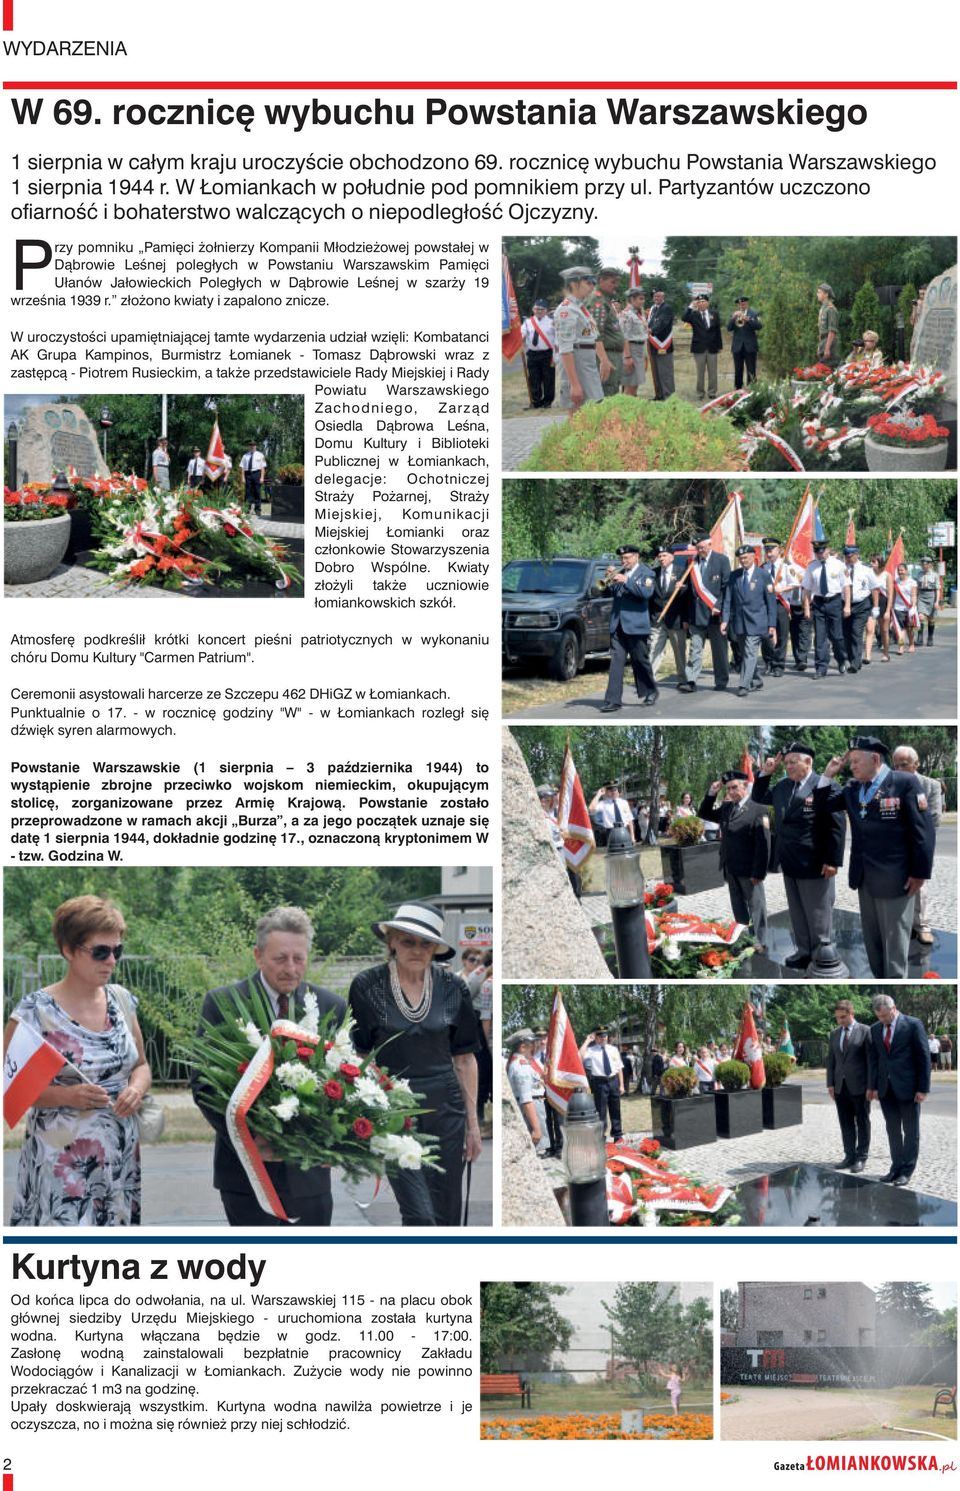 rzy pomniku Pamięci żołnierzy Kompanii Młodzieżowej powstałej w Dąbrowie Leśnej poległych w Powstaniu Warszawskim Pamięci Ułanów Jałowieckich Poległych w Dąbrowie Leśnej w szarży 19 Pwrześnia 1939 r.